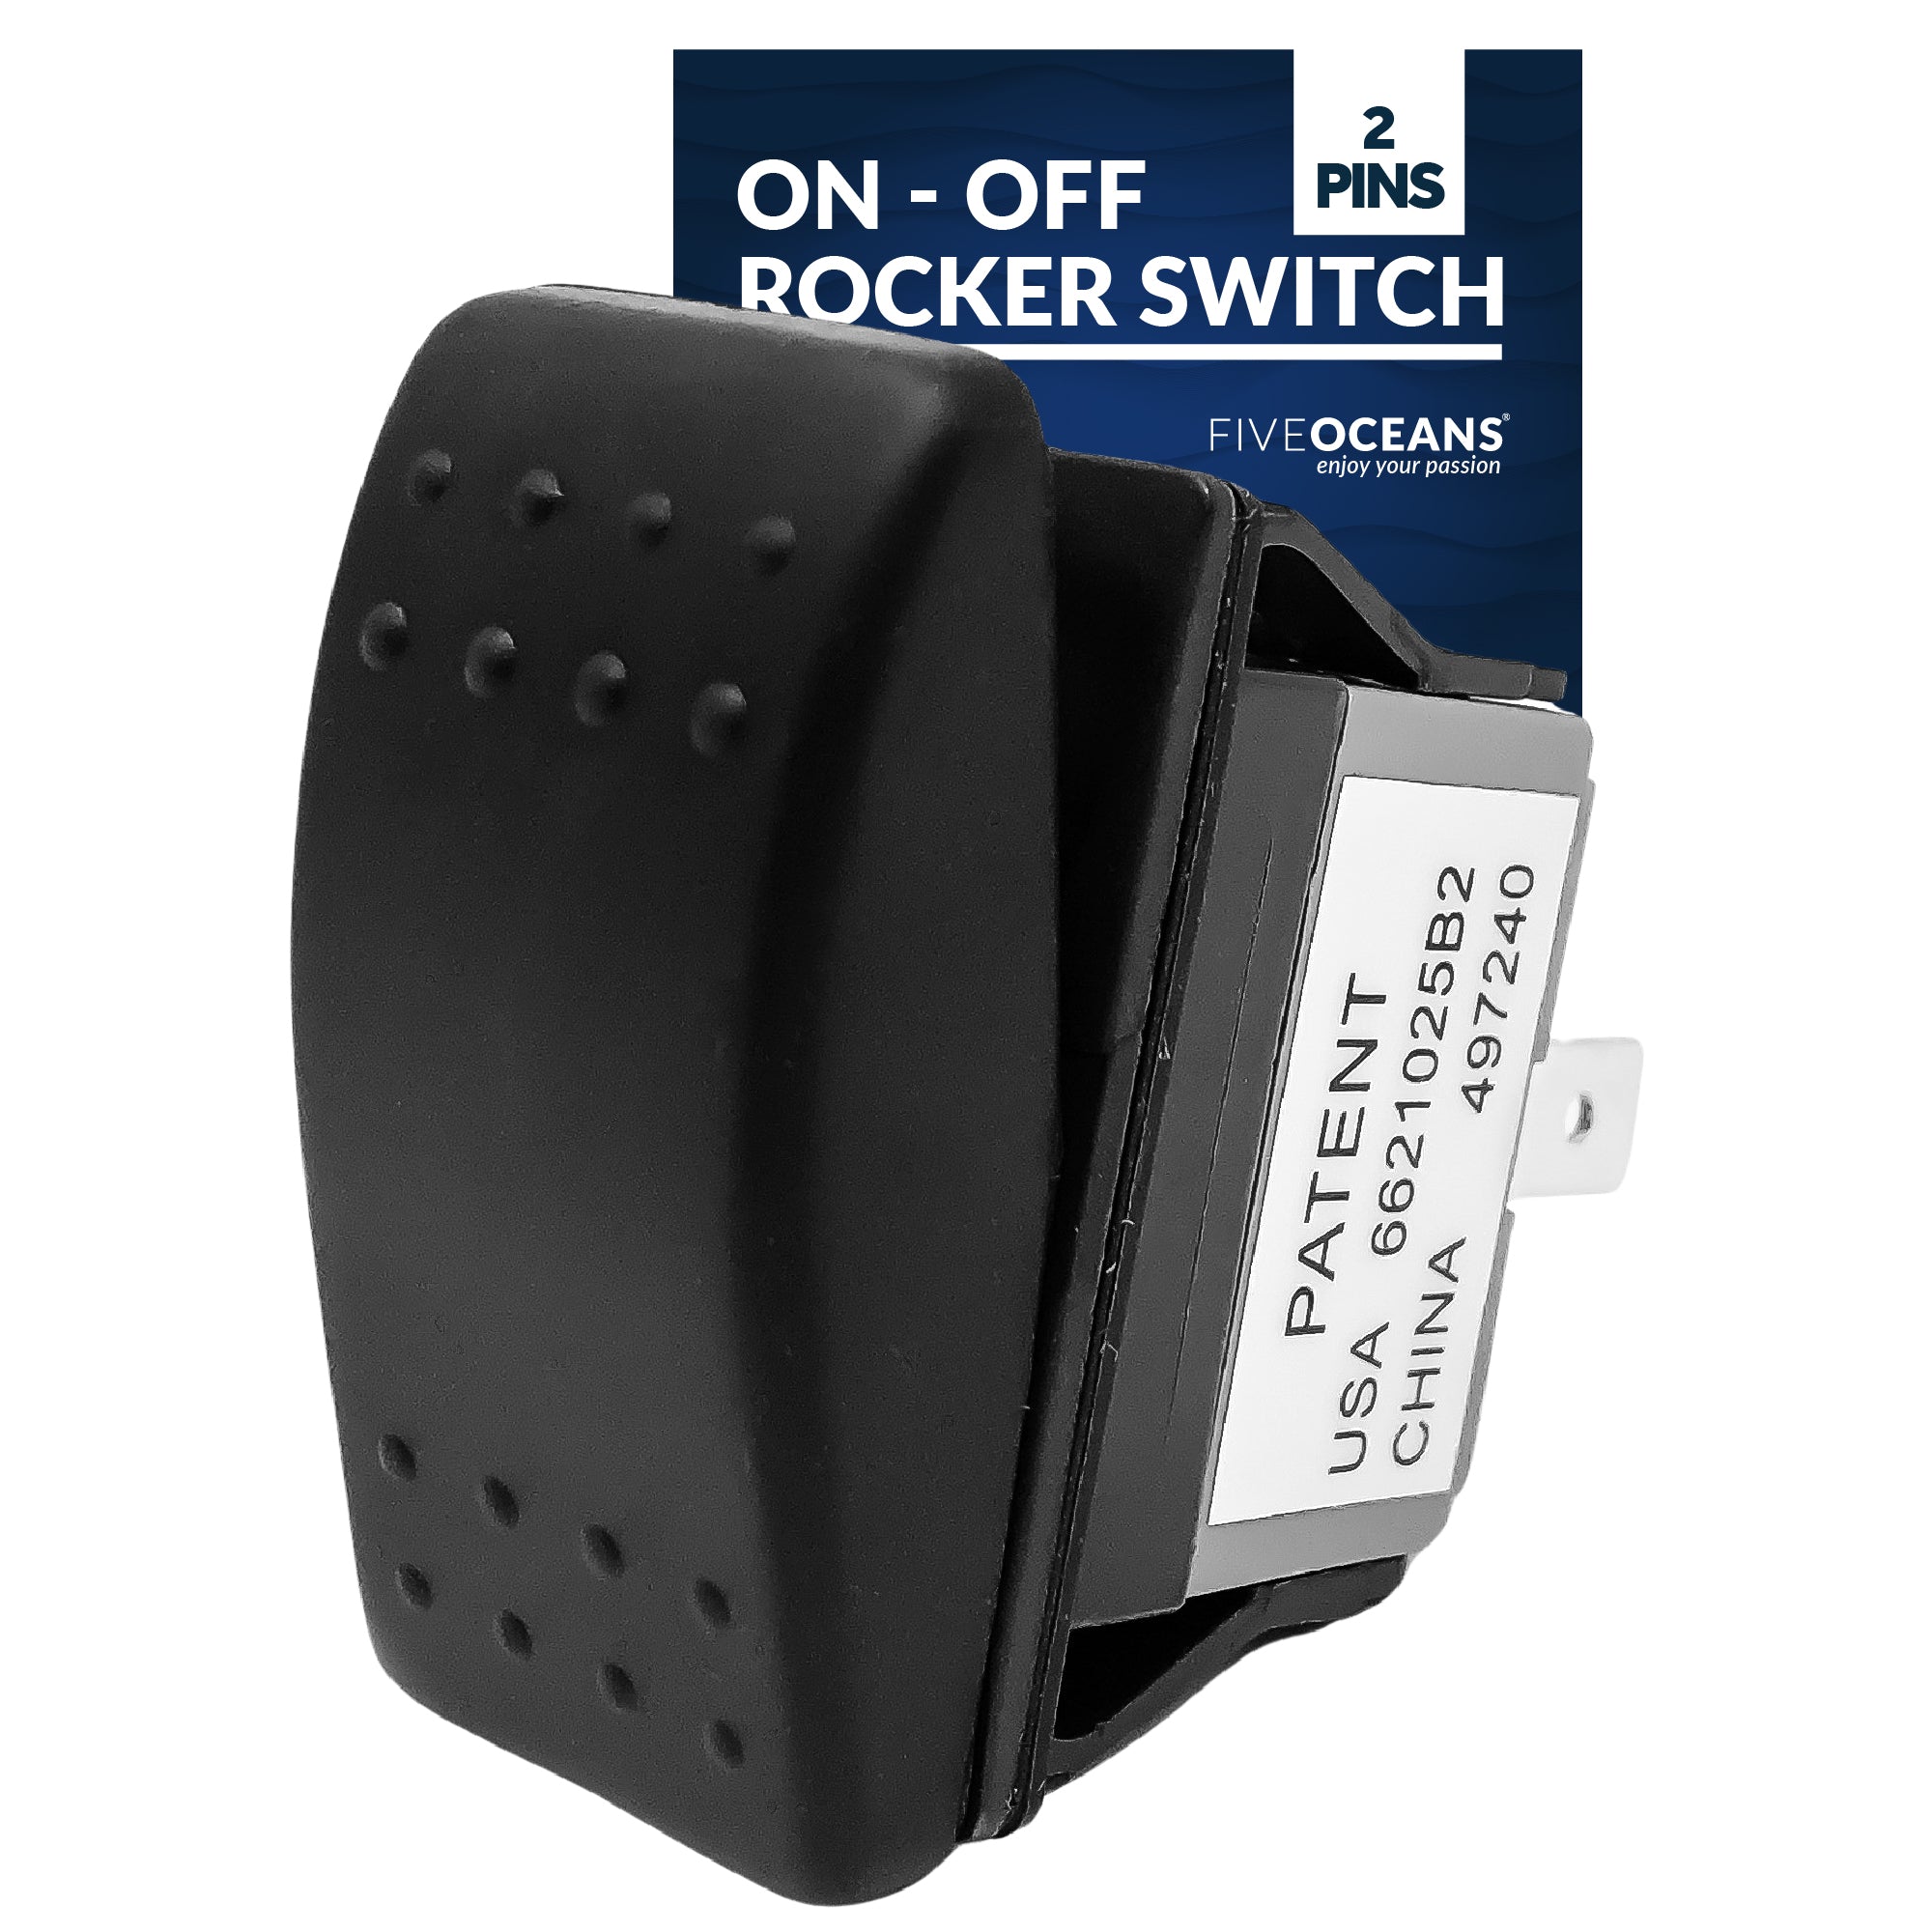 On-Off Rocker Switch - FO1525